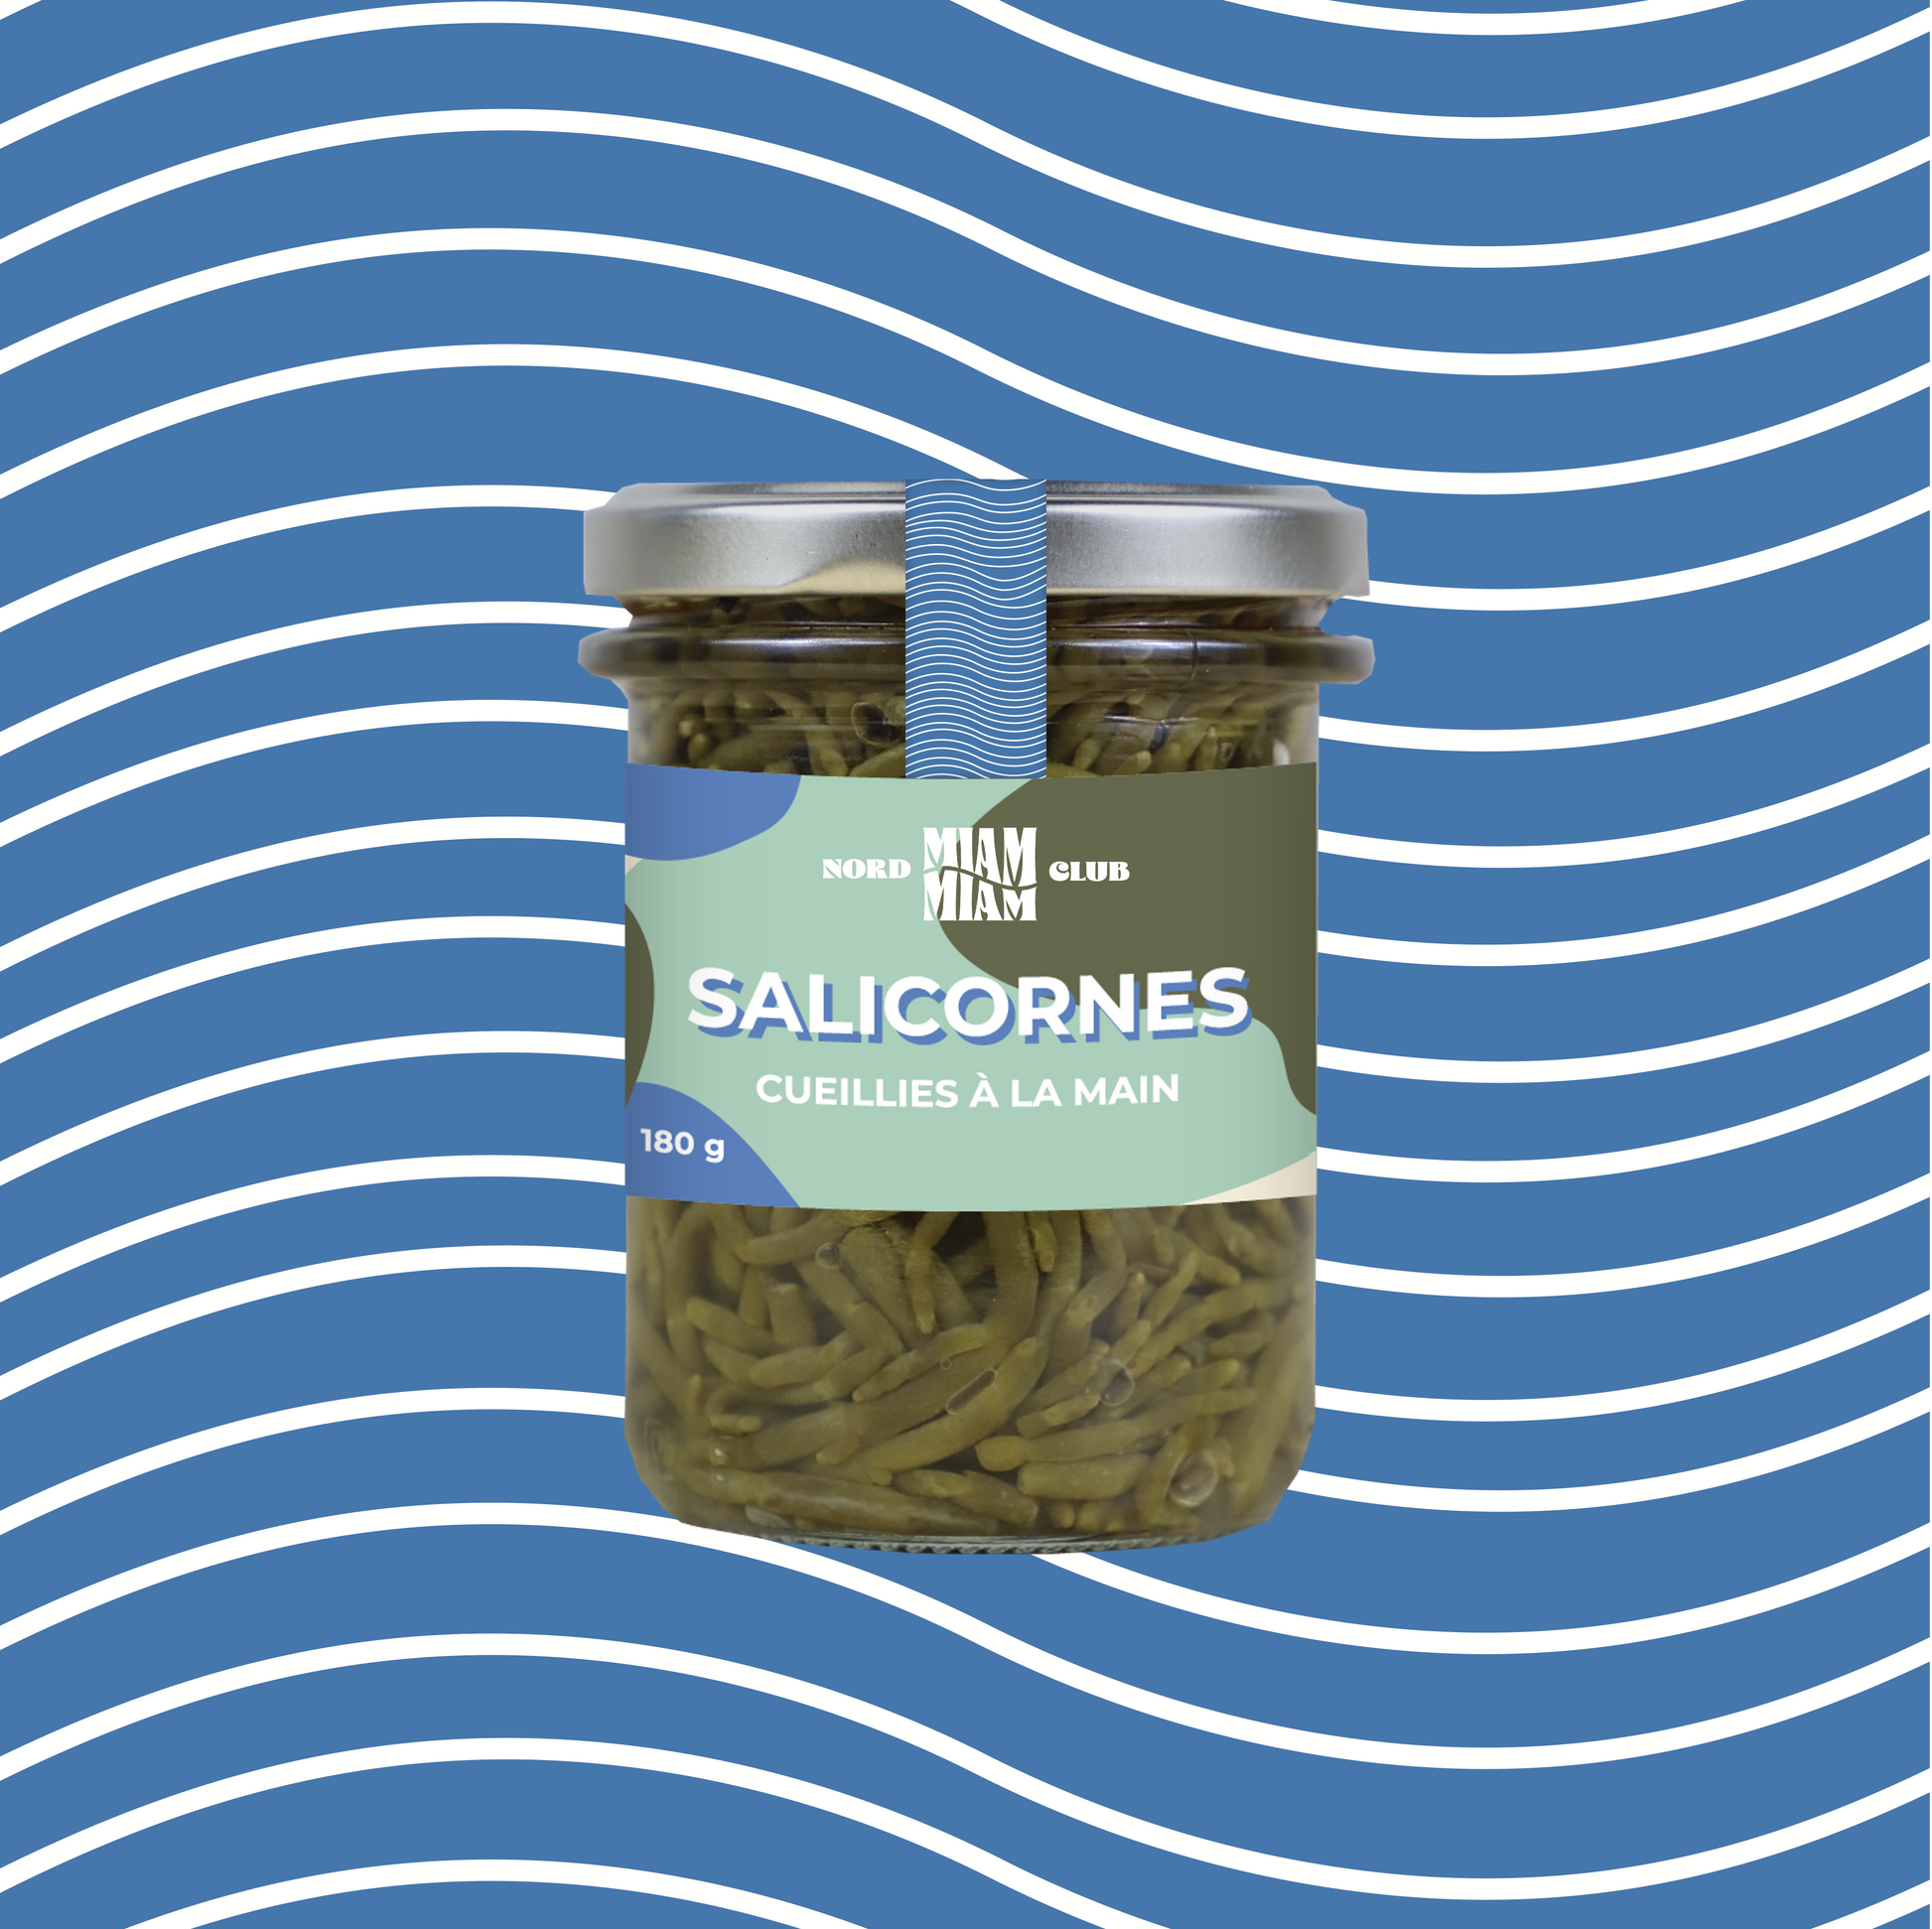 Salicornes cueillies à la main en Baie de Somme